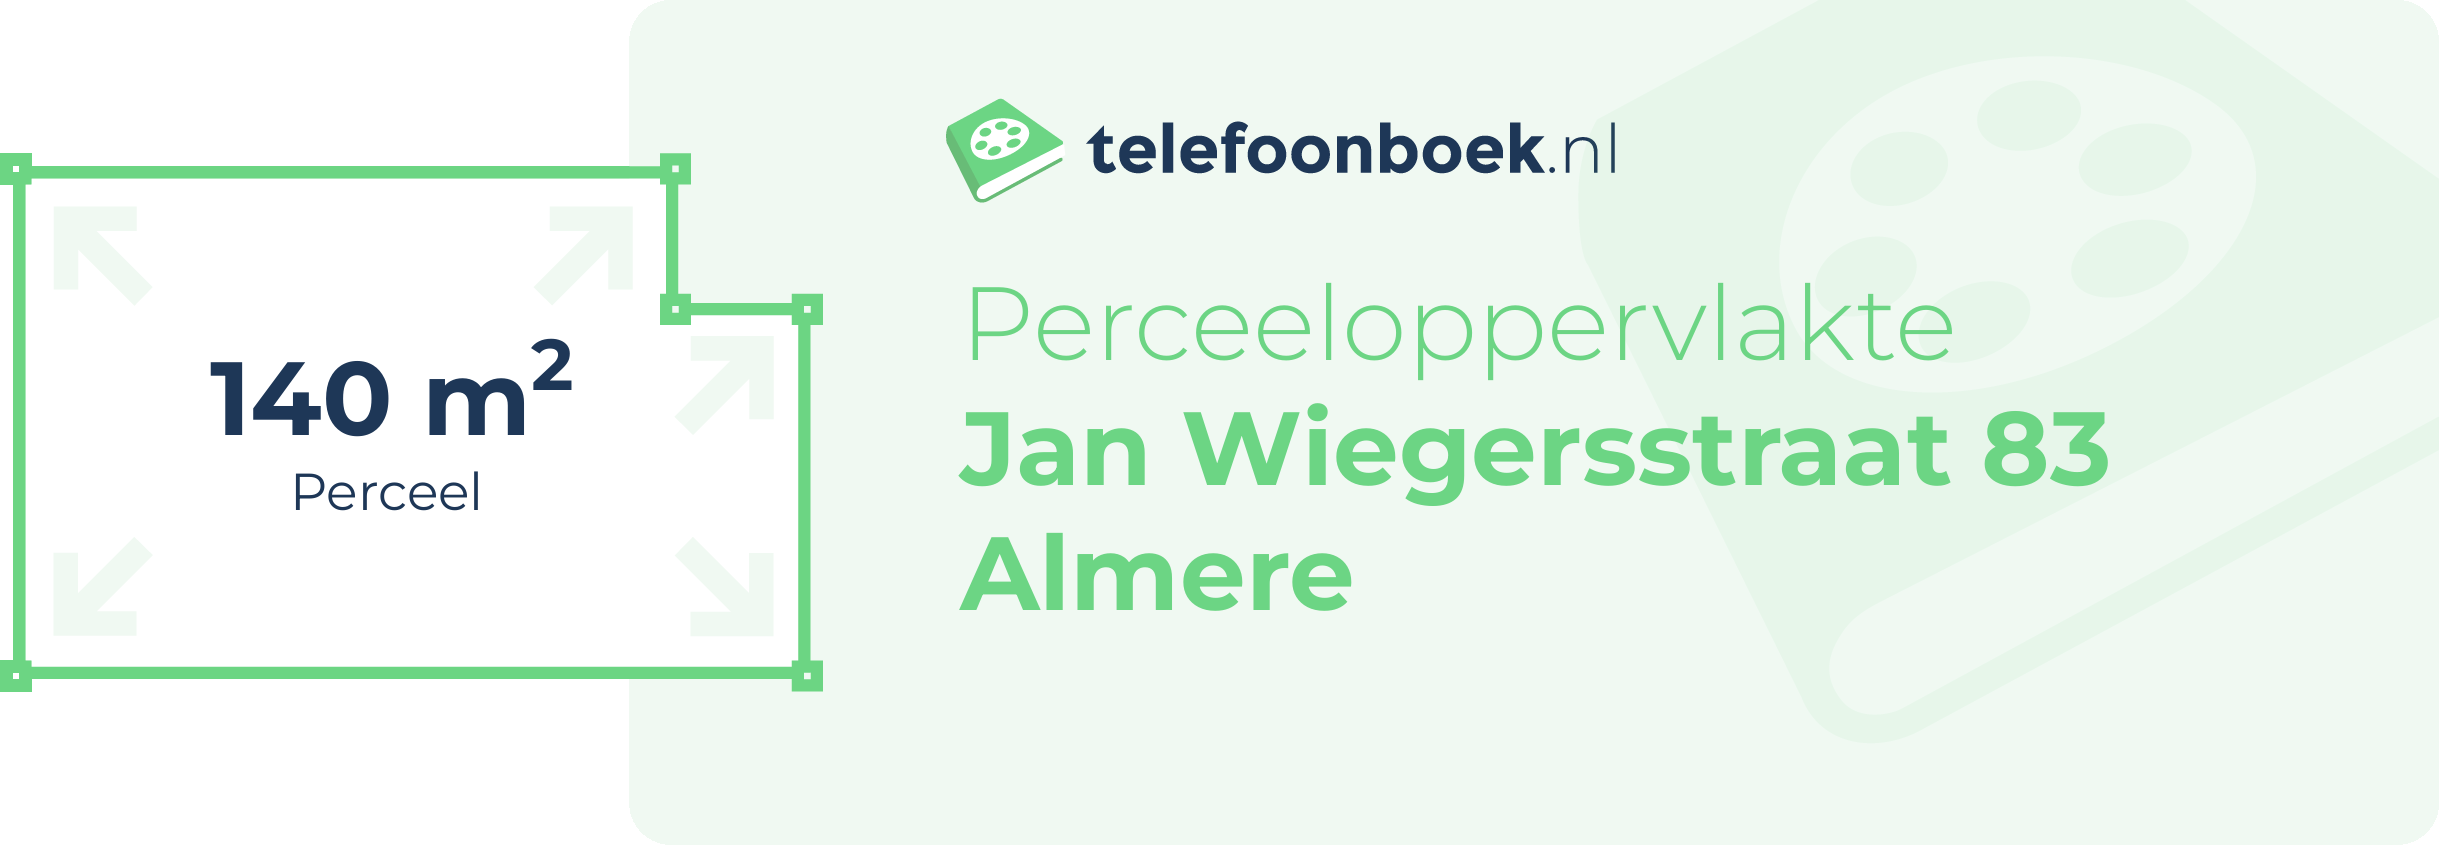 Perceeloppervlakte Jan Wiegersstraat 83 Almere